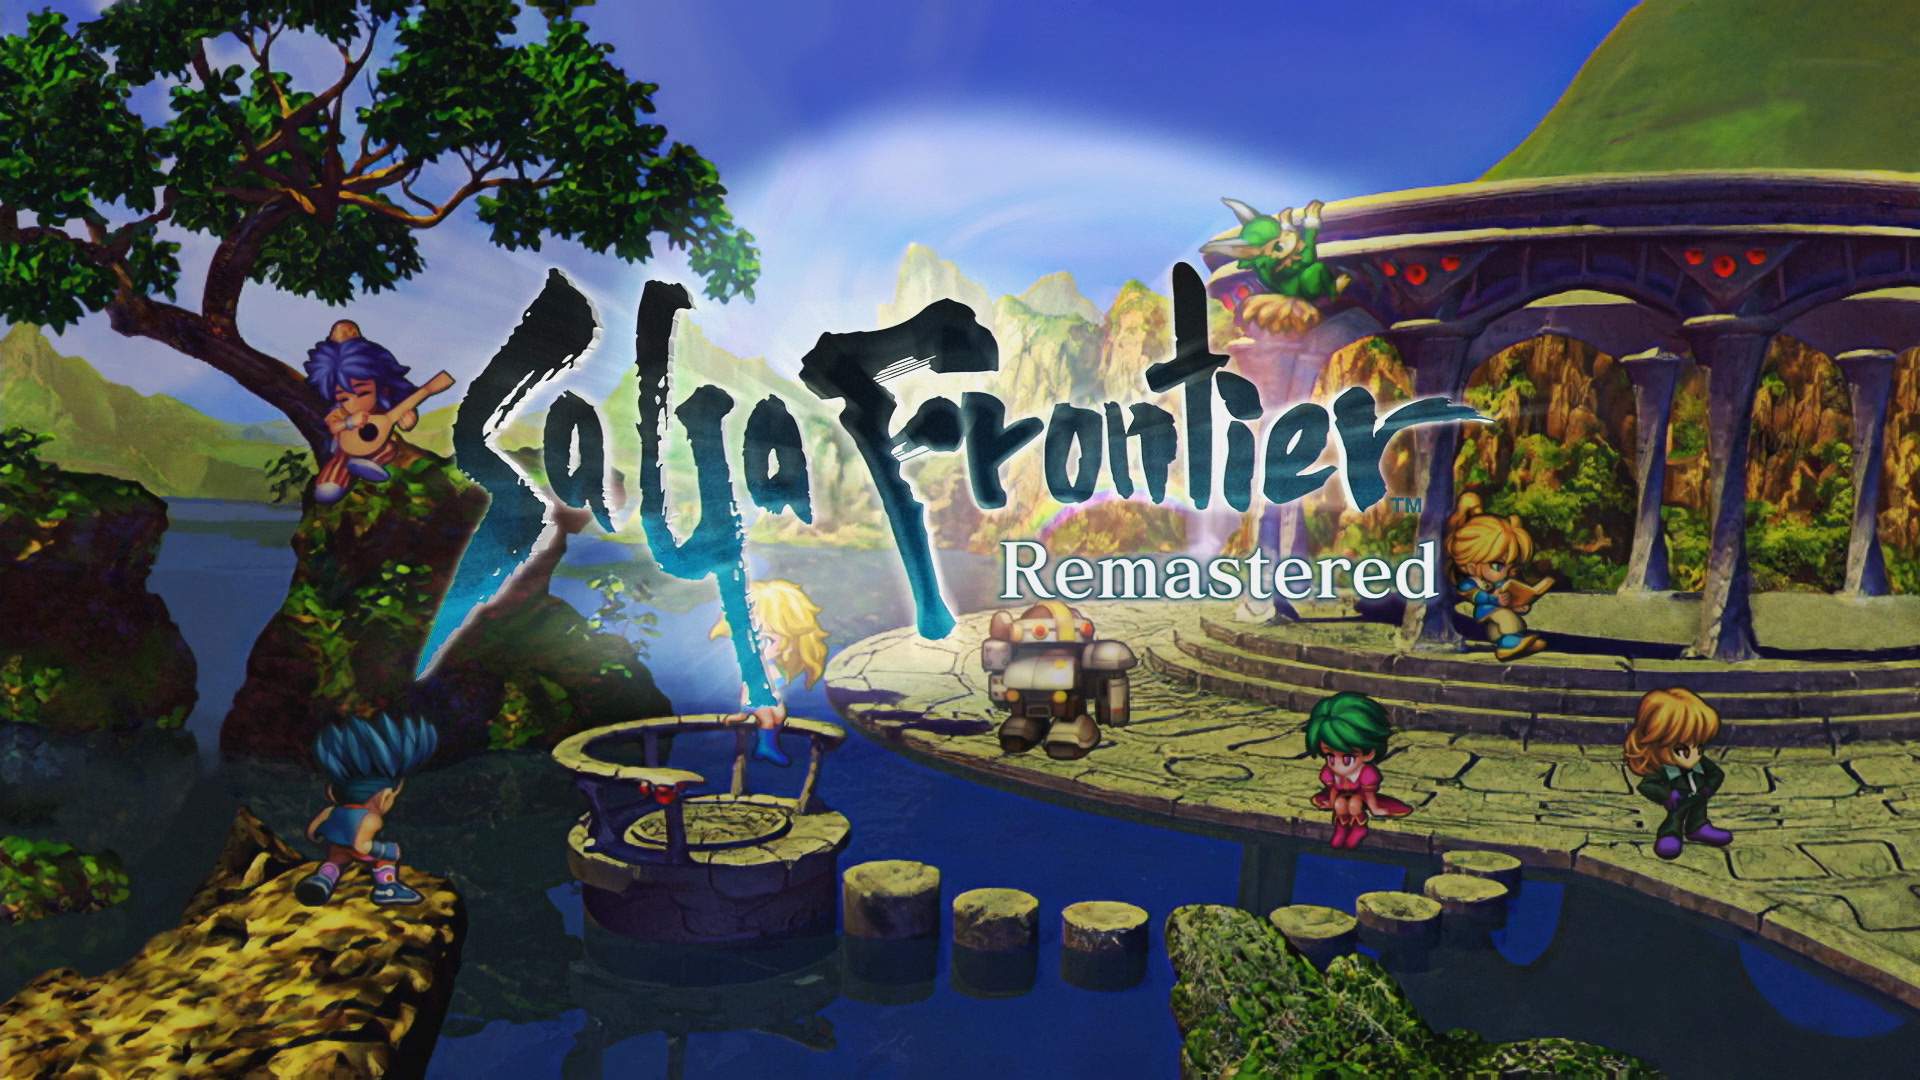 Les 8 protagonistes de SaGa Frontier Remastered au bord d'un lac, avec le logo du jeu au centre de l'image.